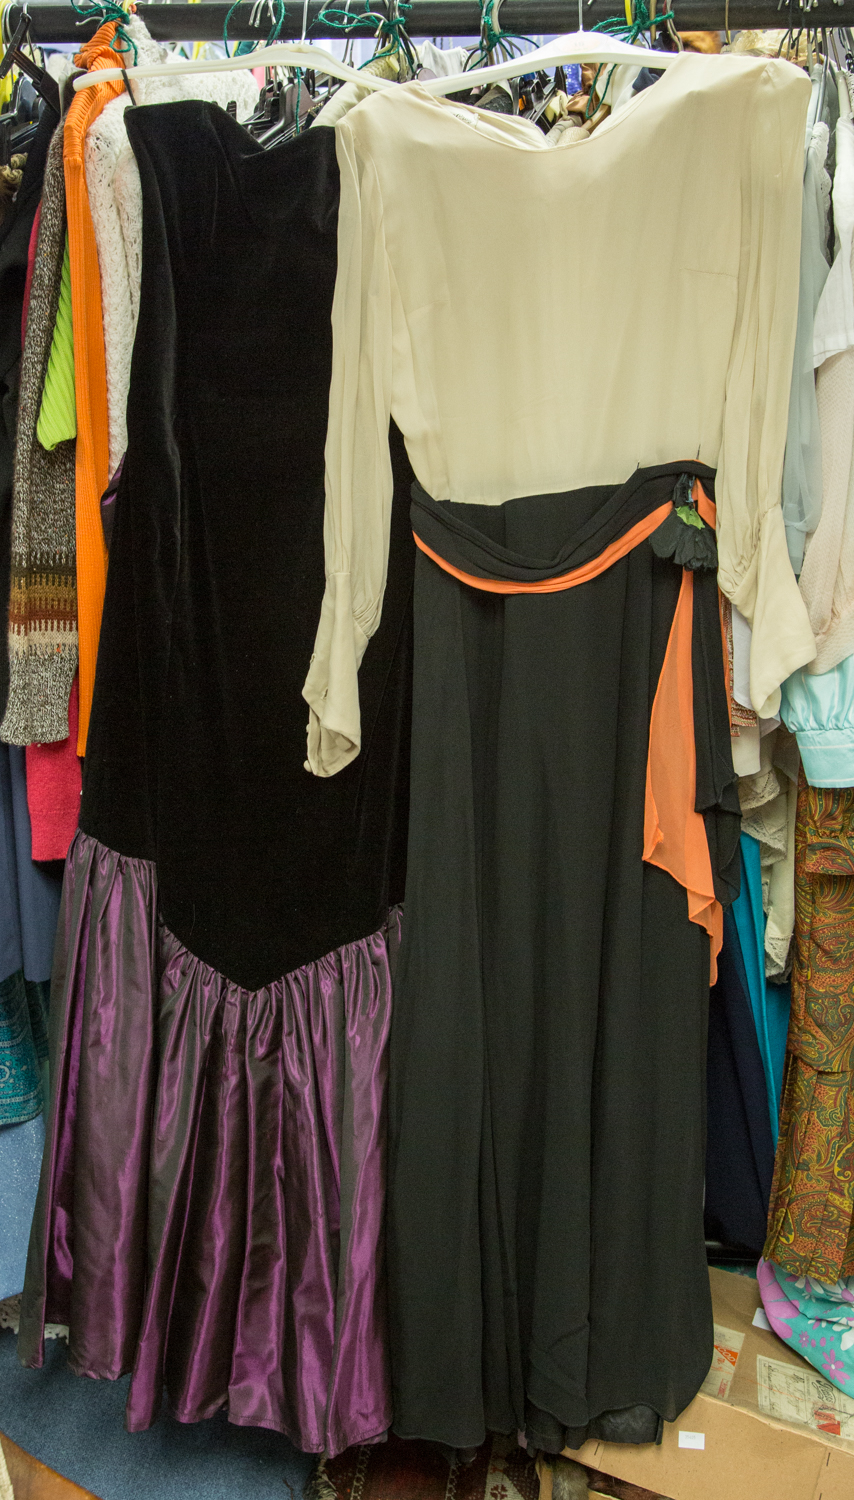 A Laura Ashley 1980s black velvet strapless dress with a short purple taffeta skirt, crepe cream